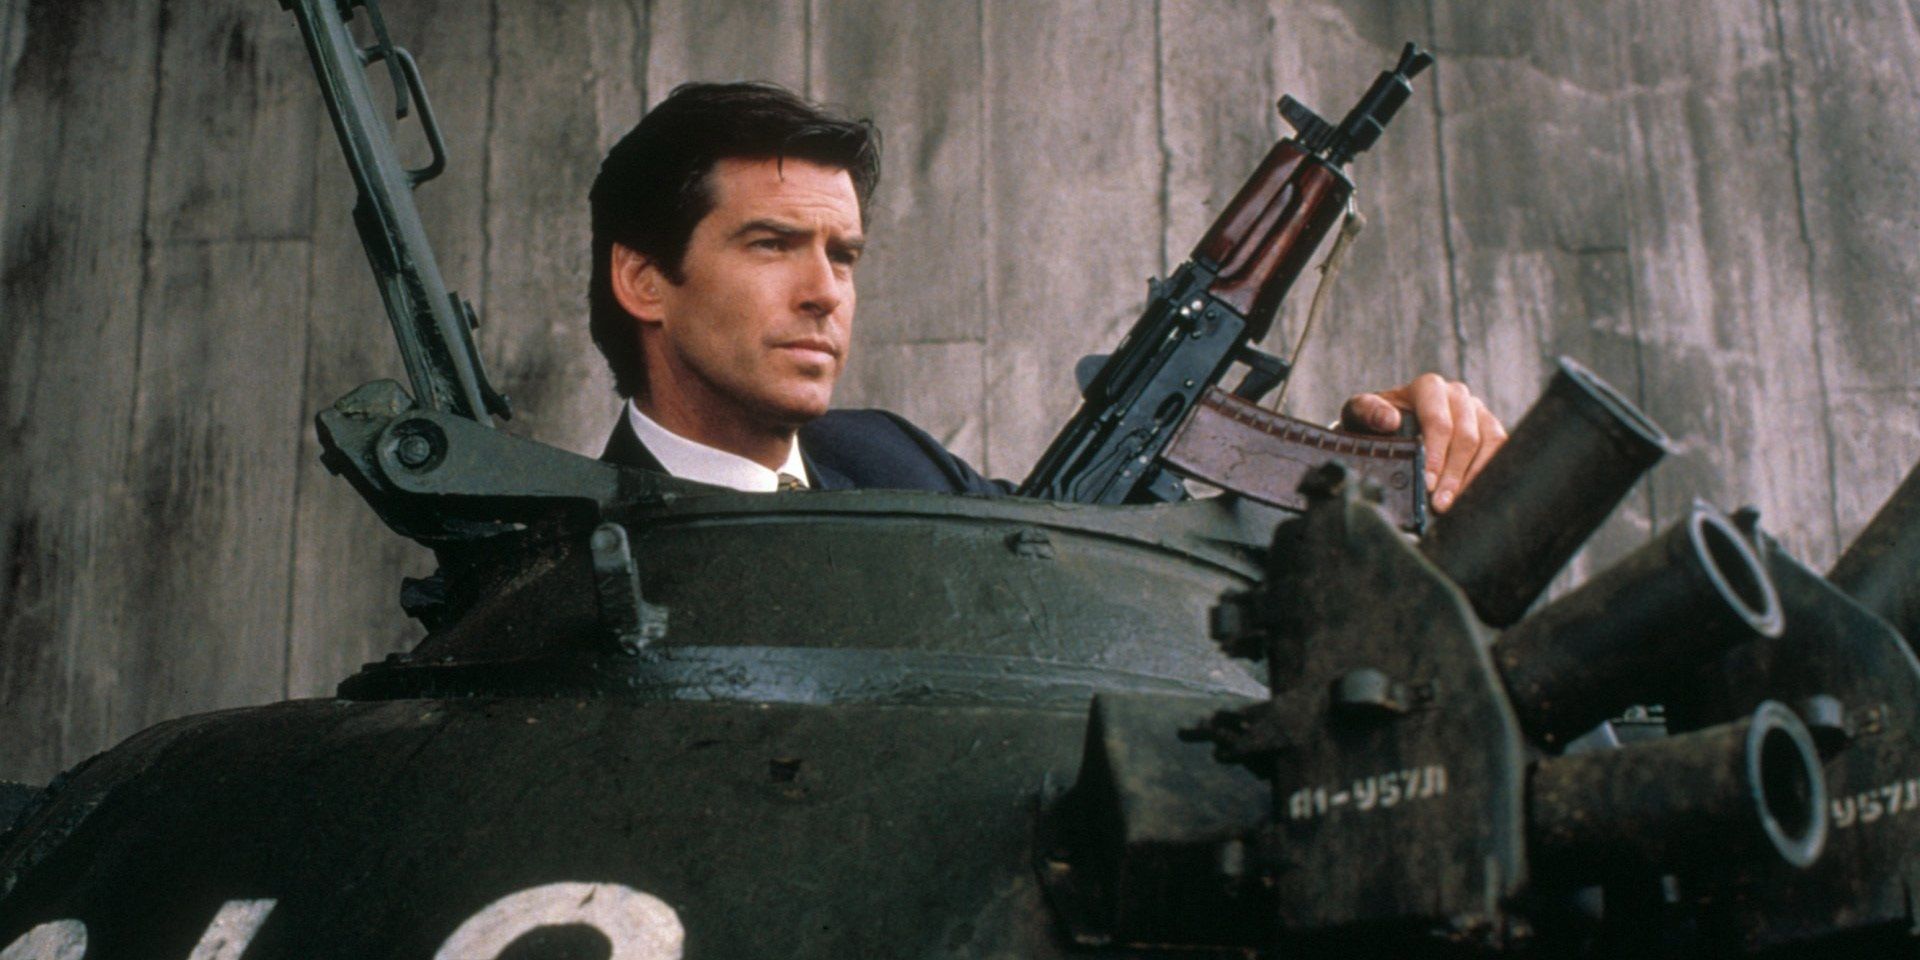 Pierce Brosnan as Bond driving a tank in GoldenEye